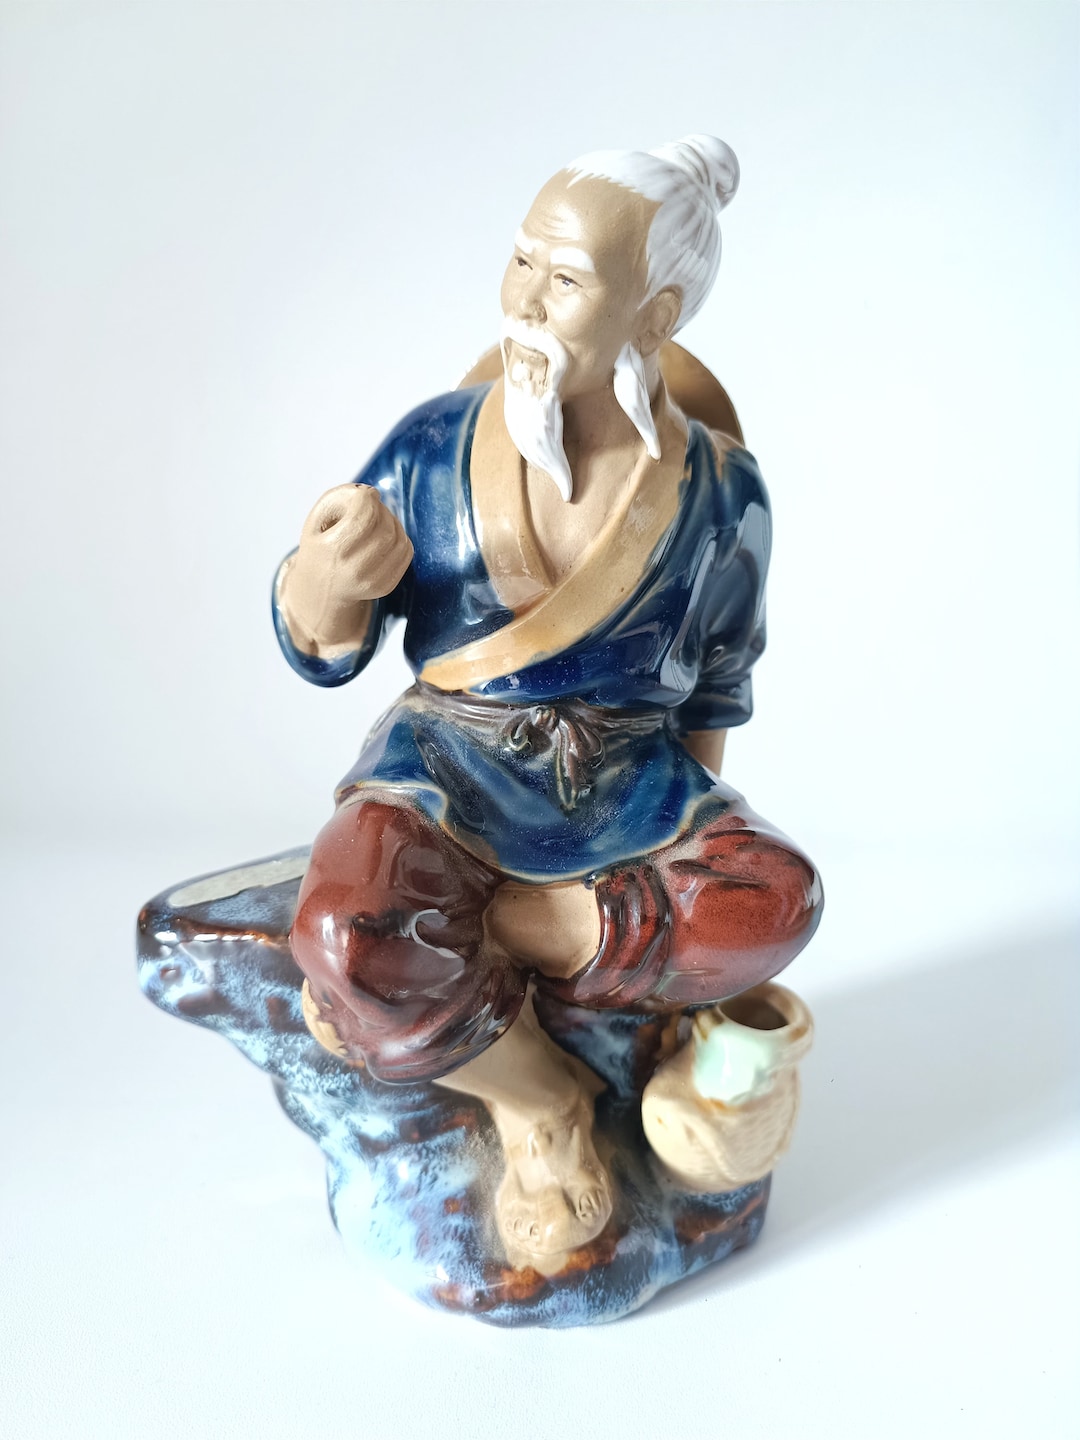 1990s Chinese Mudman Figurine Purchased in Vietnam